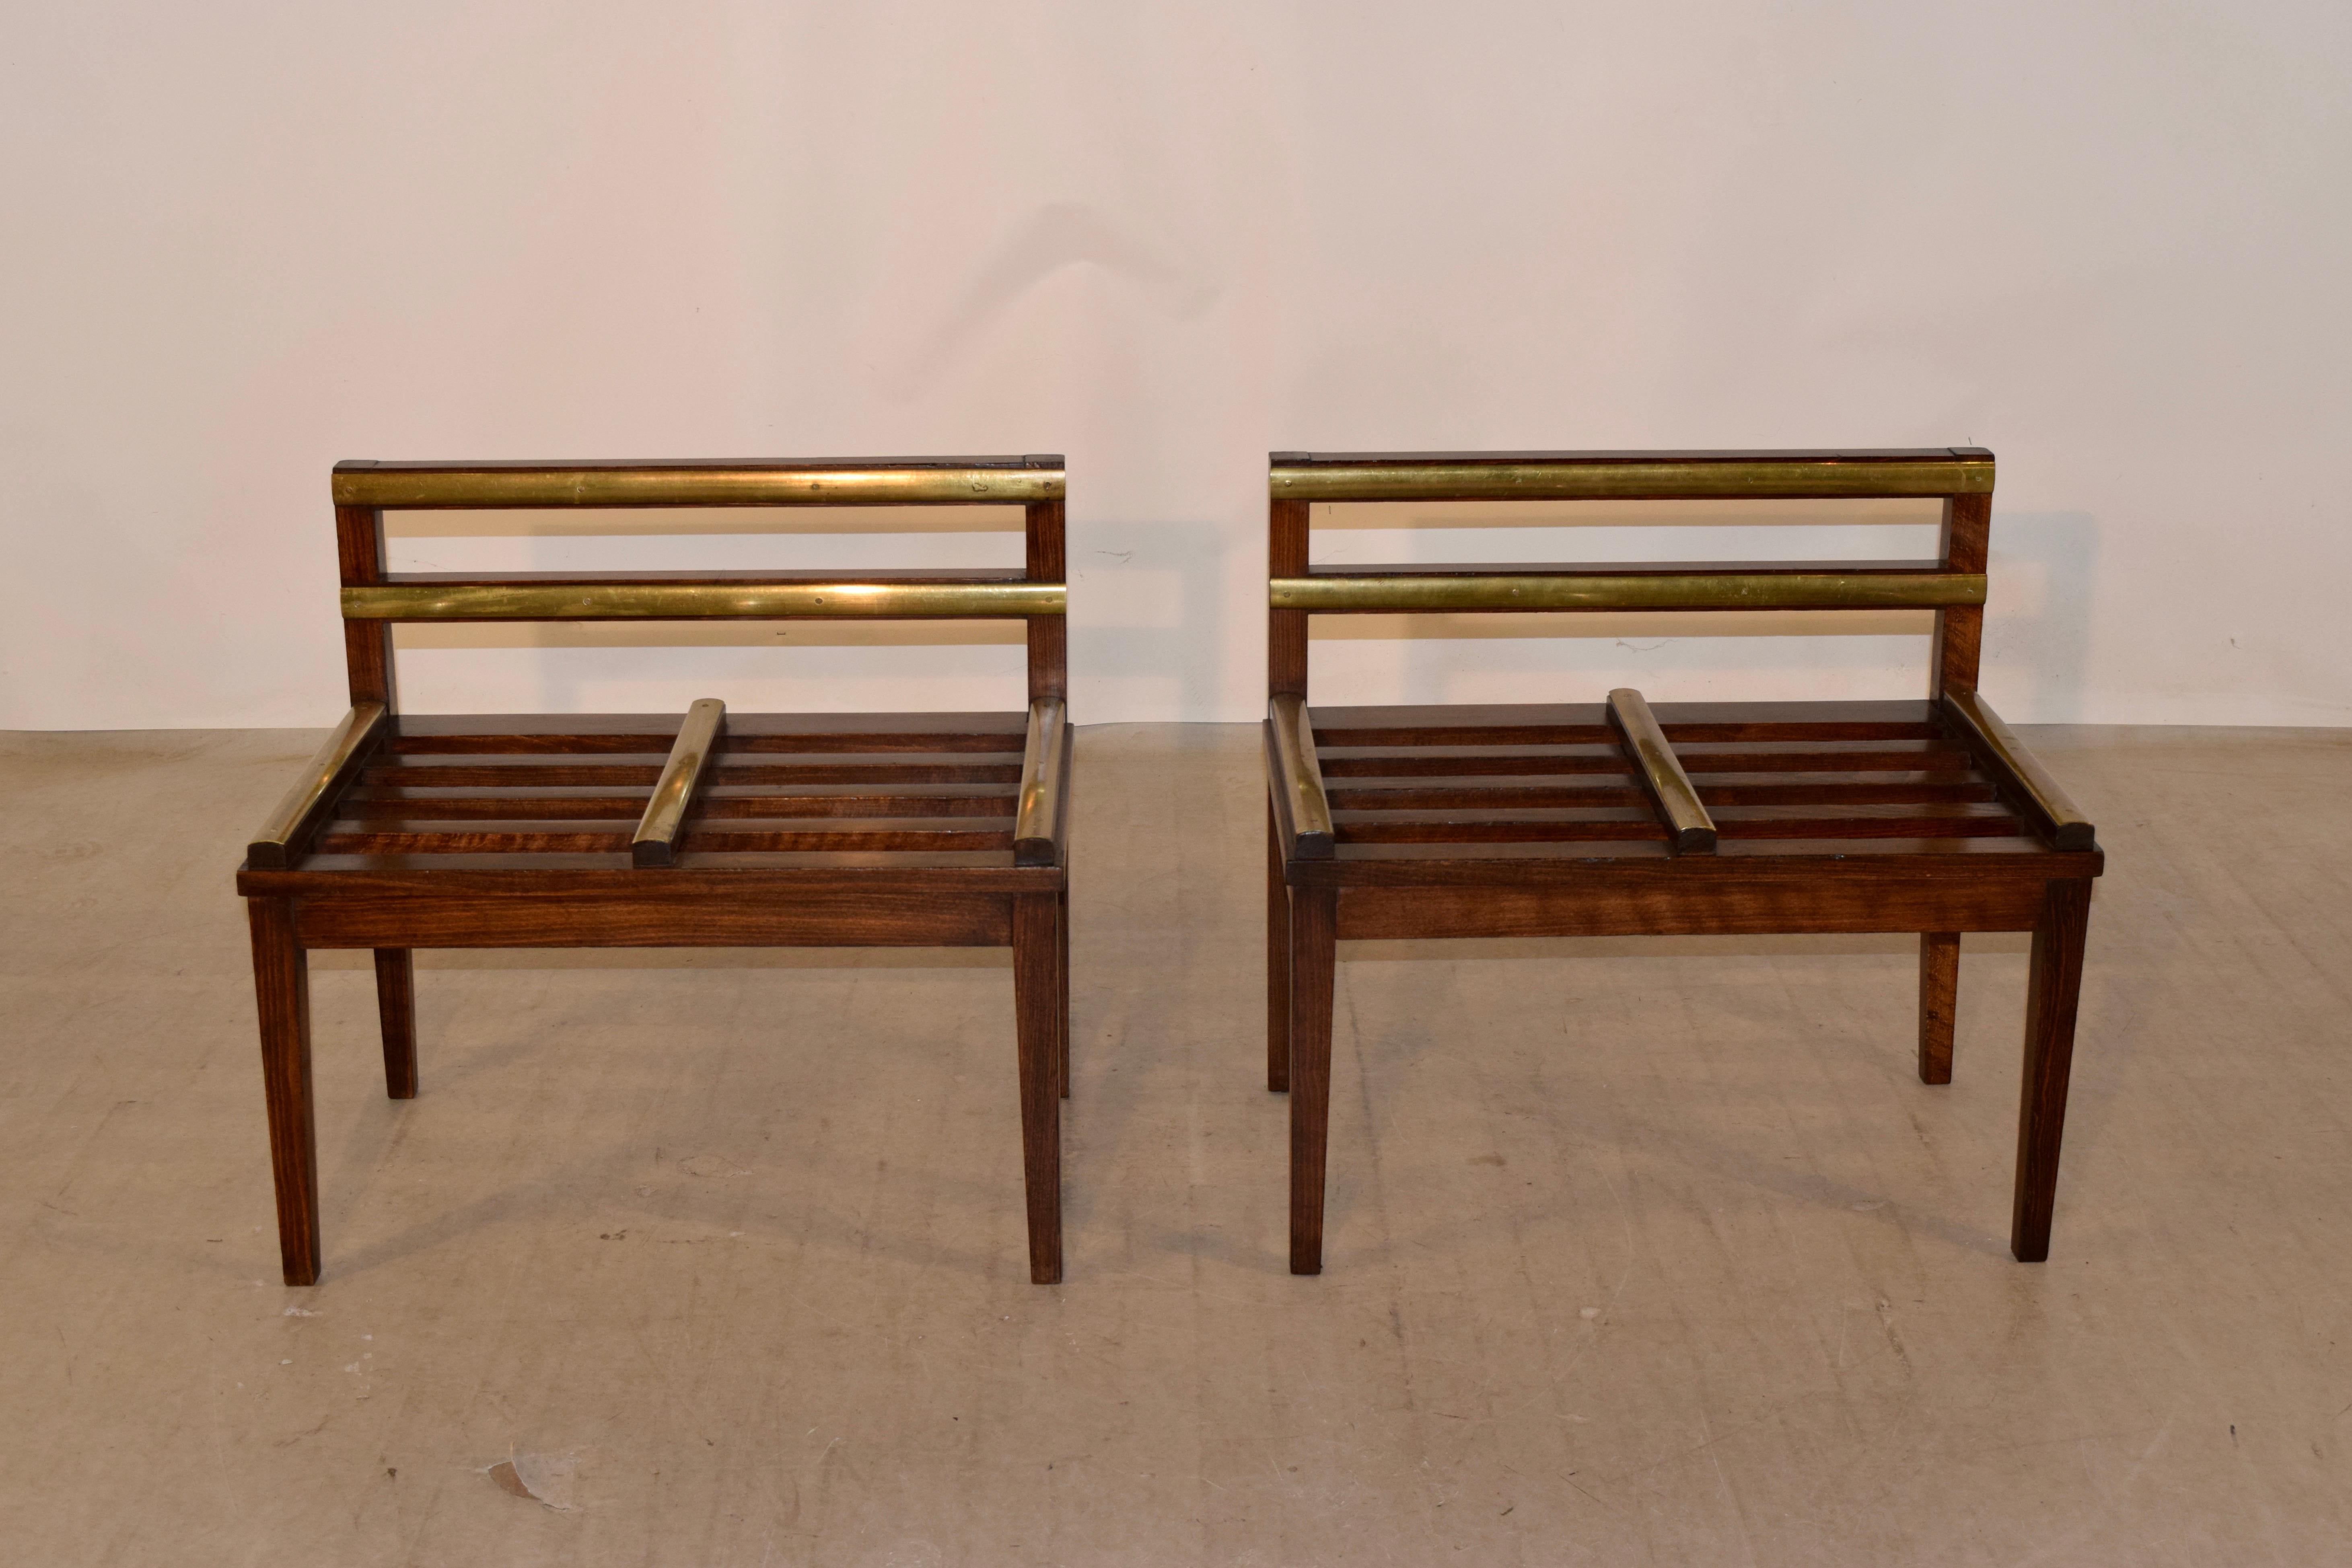 Fabuleuse et très rare paire de porte-bagages signés RINCK Paris, en bois fruitier, vers 1920-1940. Ils sont d'un design simple et élégant, avec des rails en laiton pour maintenir les surfaces en bois en bon état. La famille Rinck était ébéniste et